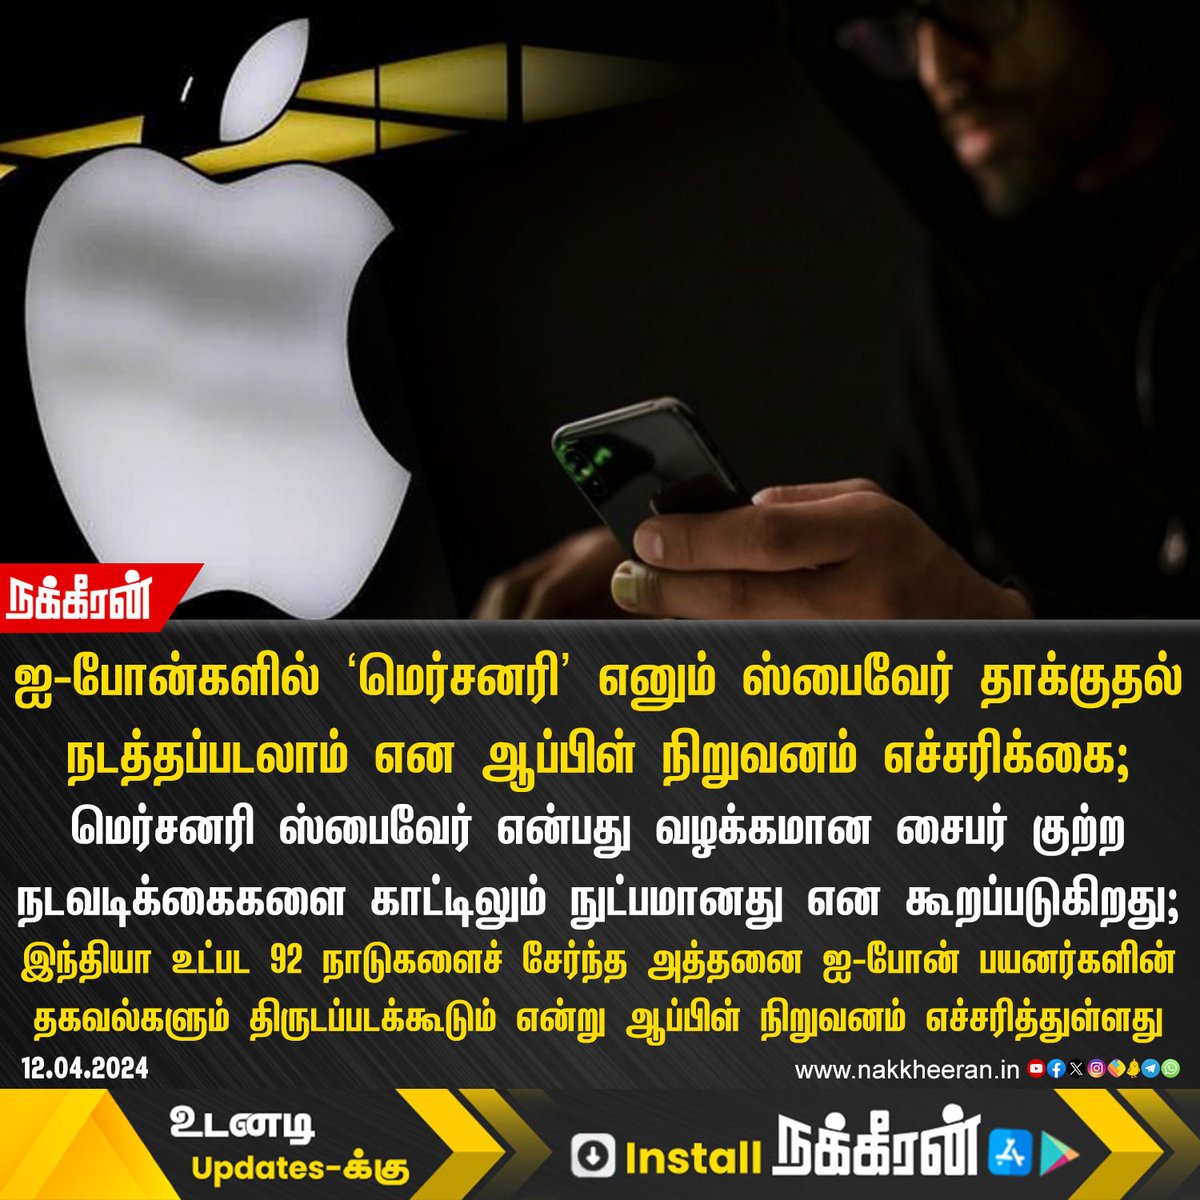 ஐ-போன்களில் 'மெர்சனரி' எனும் ஸ்பைவேர் தாக்குதல் நடத்தப்படலாம் என ஆப்பிள் நிறுவனம் எச்சரிக்கை!

#Iphone #Apple #Mercenaryspyware #Nakkheeran